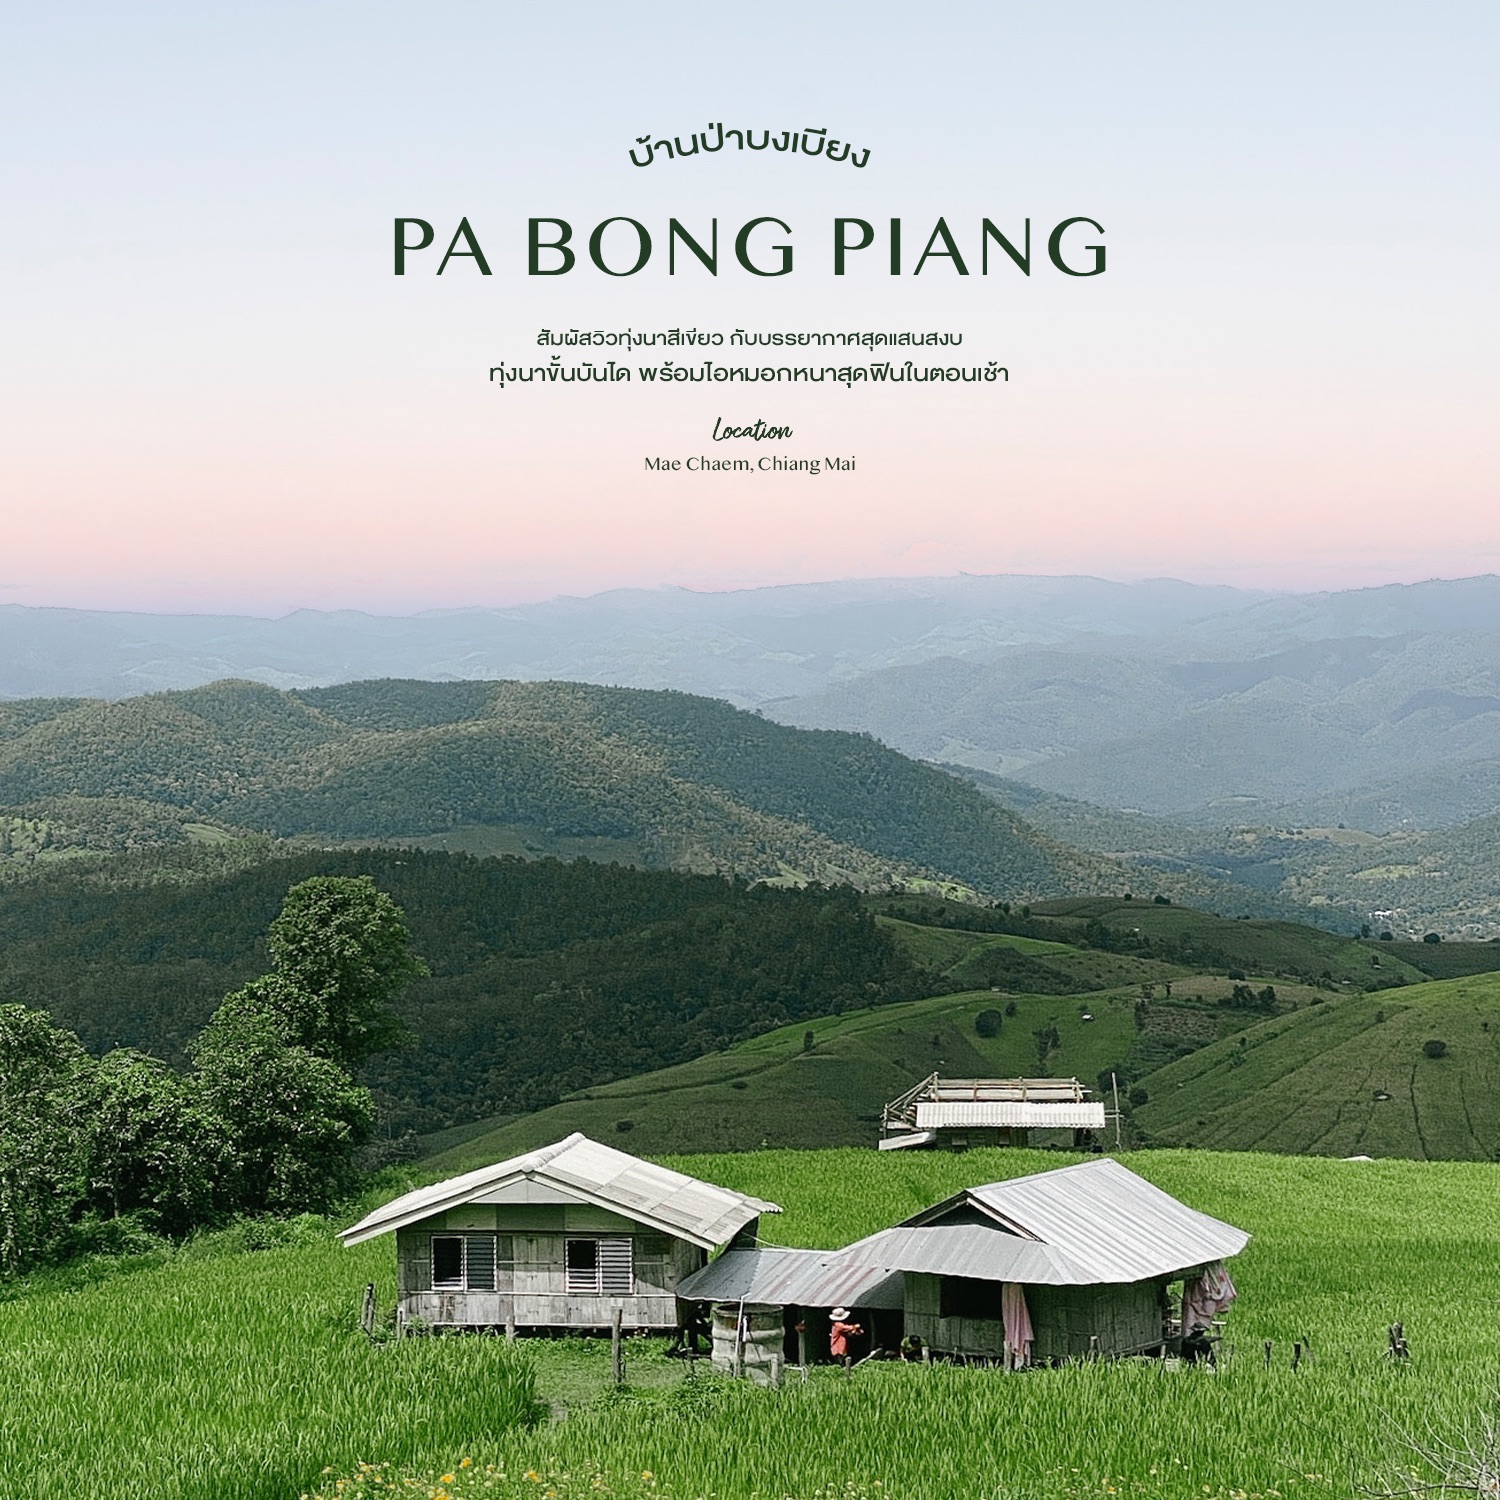 Ban Pa Bong Piang - 体验绿色梯田的景色